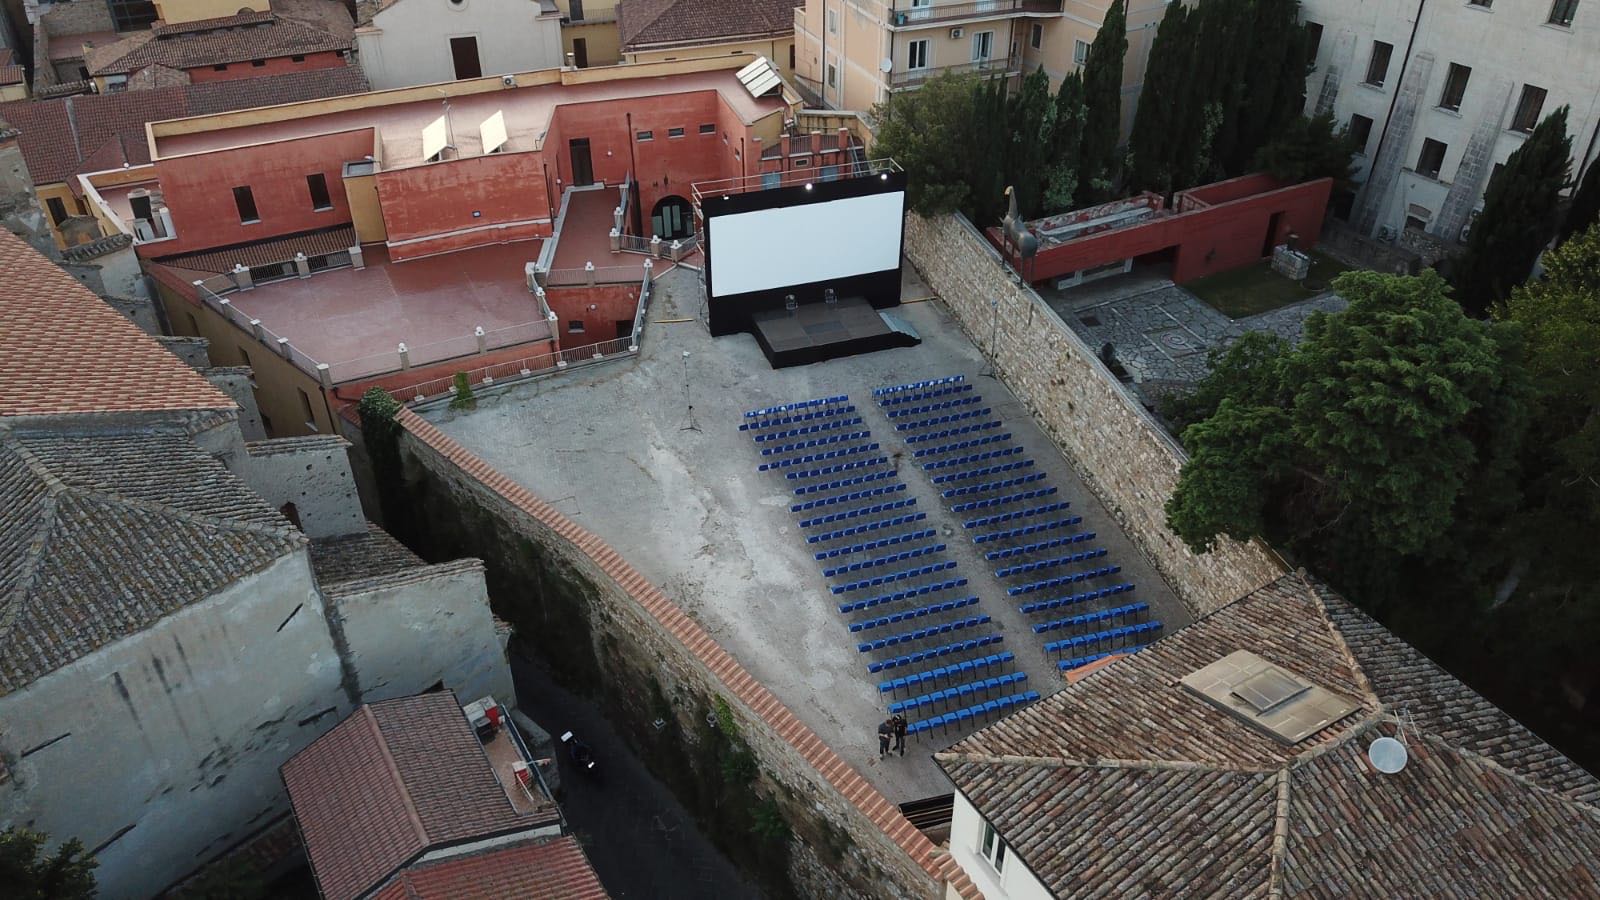 Benevento| All’Hortus Conclusus con “Cinema sotto le stelle”